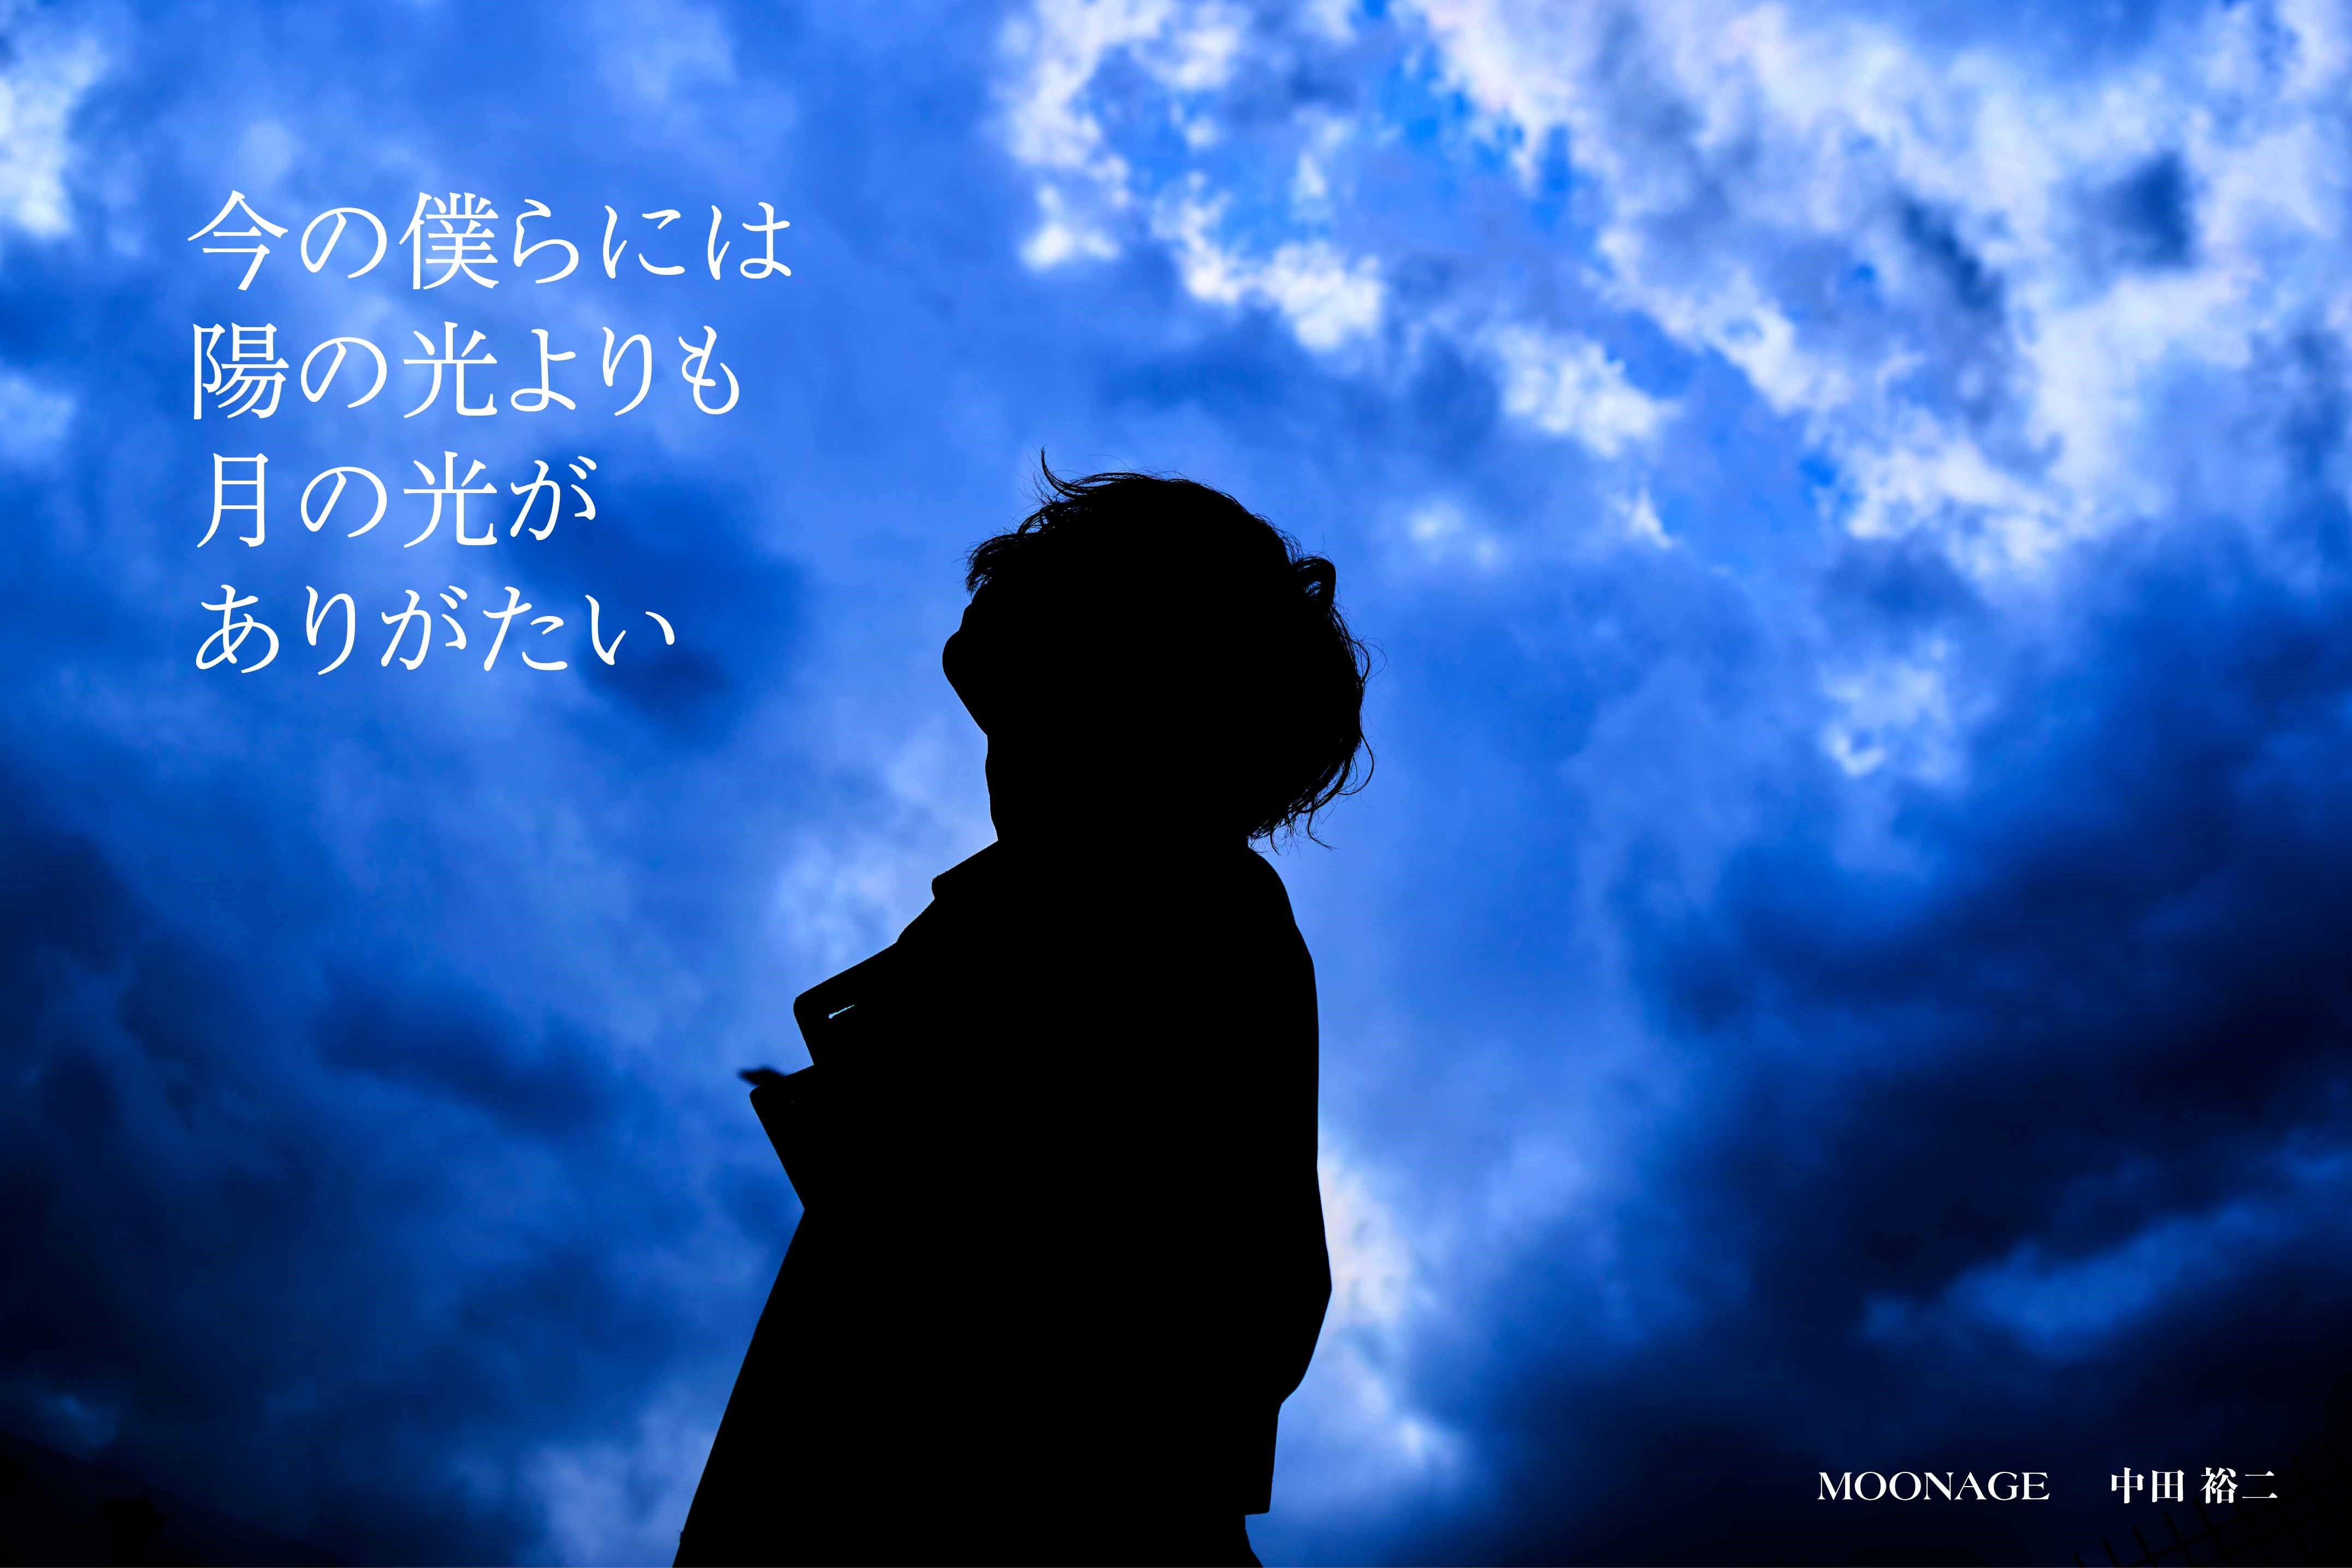 中田裕二、4月にニューアルバム『MOONAGE』リリース決定！ リード曲「ハグレモノ」を先行配信